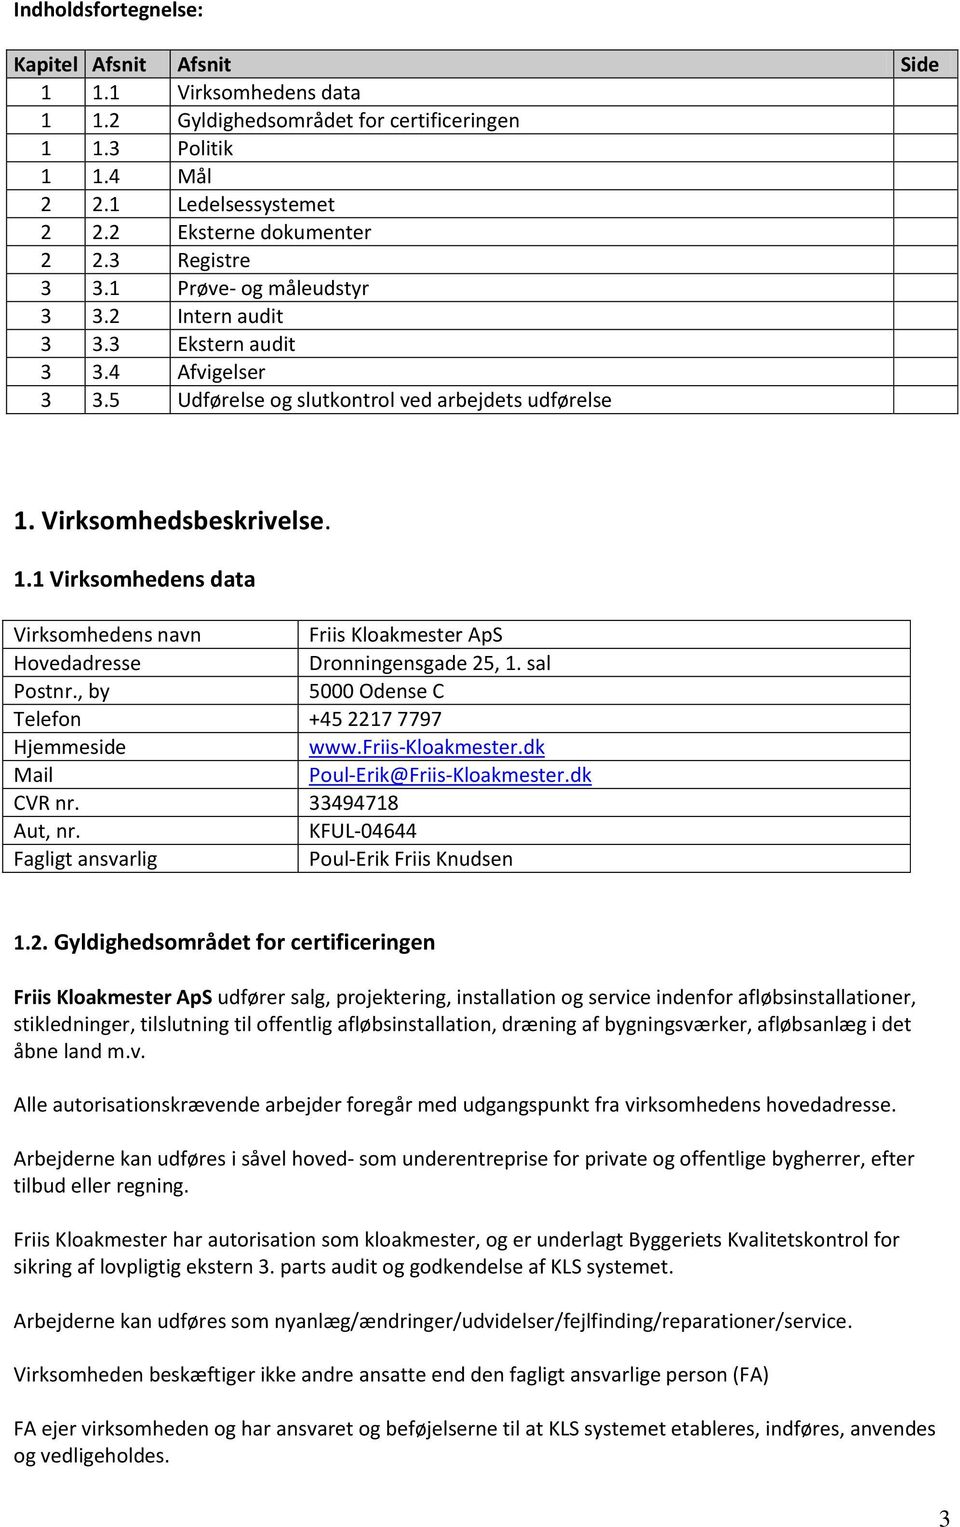 Virksomhedsbeskrivelse. 1.1 Virksomhedens data Virksomhedens navn Friis Kloakmester ApS Hovedadresse Dronningensgade 25, 1. sal Postnr., by 5000 Odense C Telefon +45 2217 7797 Hjemmeside www.